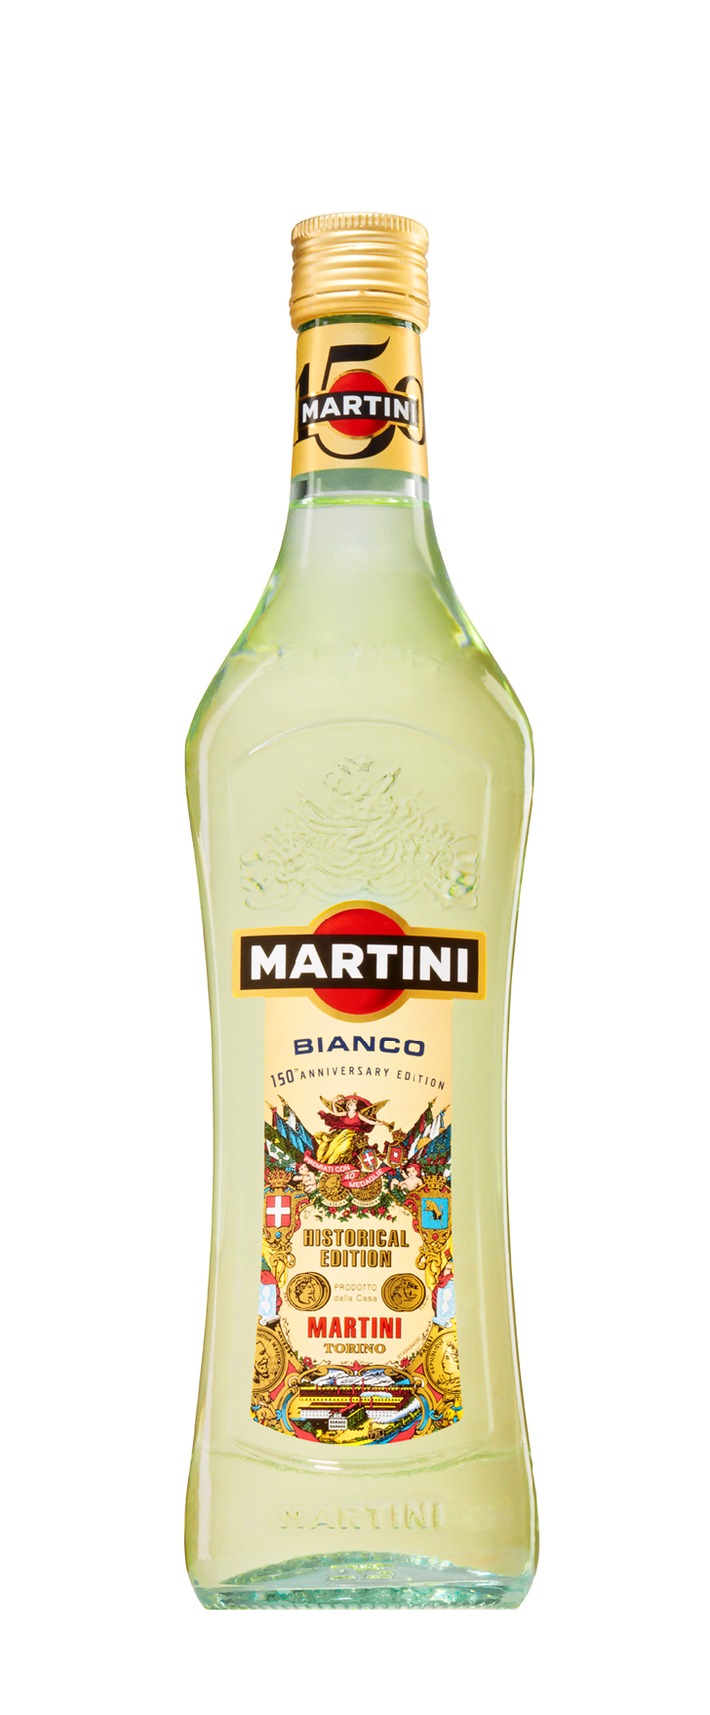 Am 19. Juni ist Welt-Martini-Tag: Grund genug auf das anstehende Jubiläum der gleichnamigen Kultmarke anzustoßen (BILD)